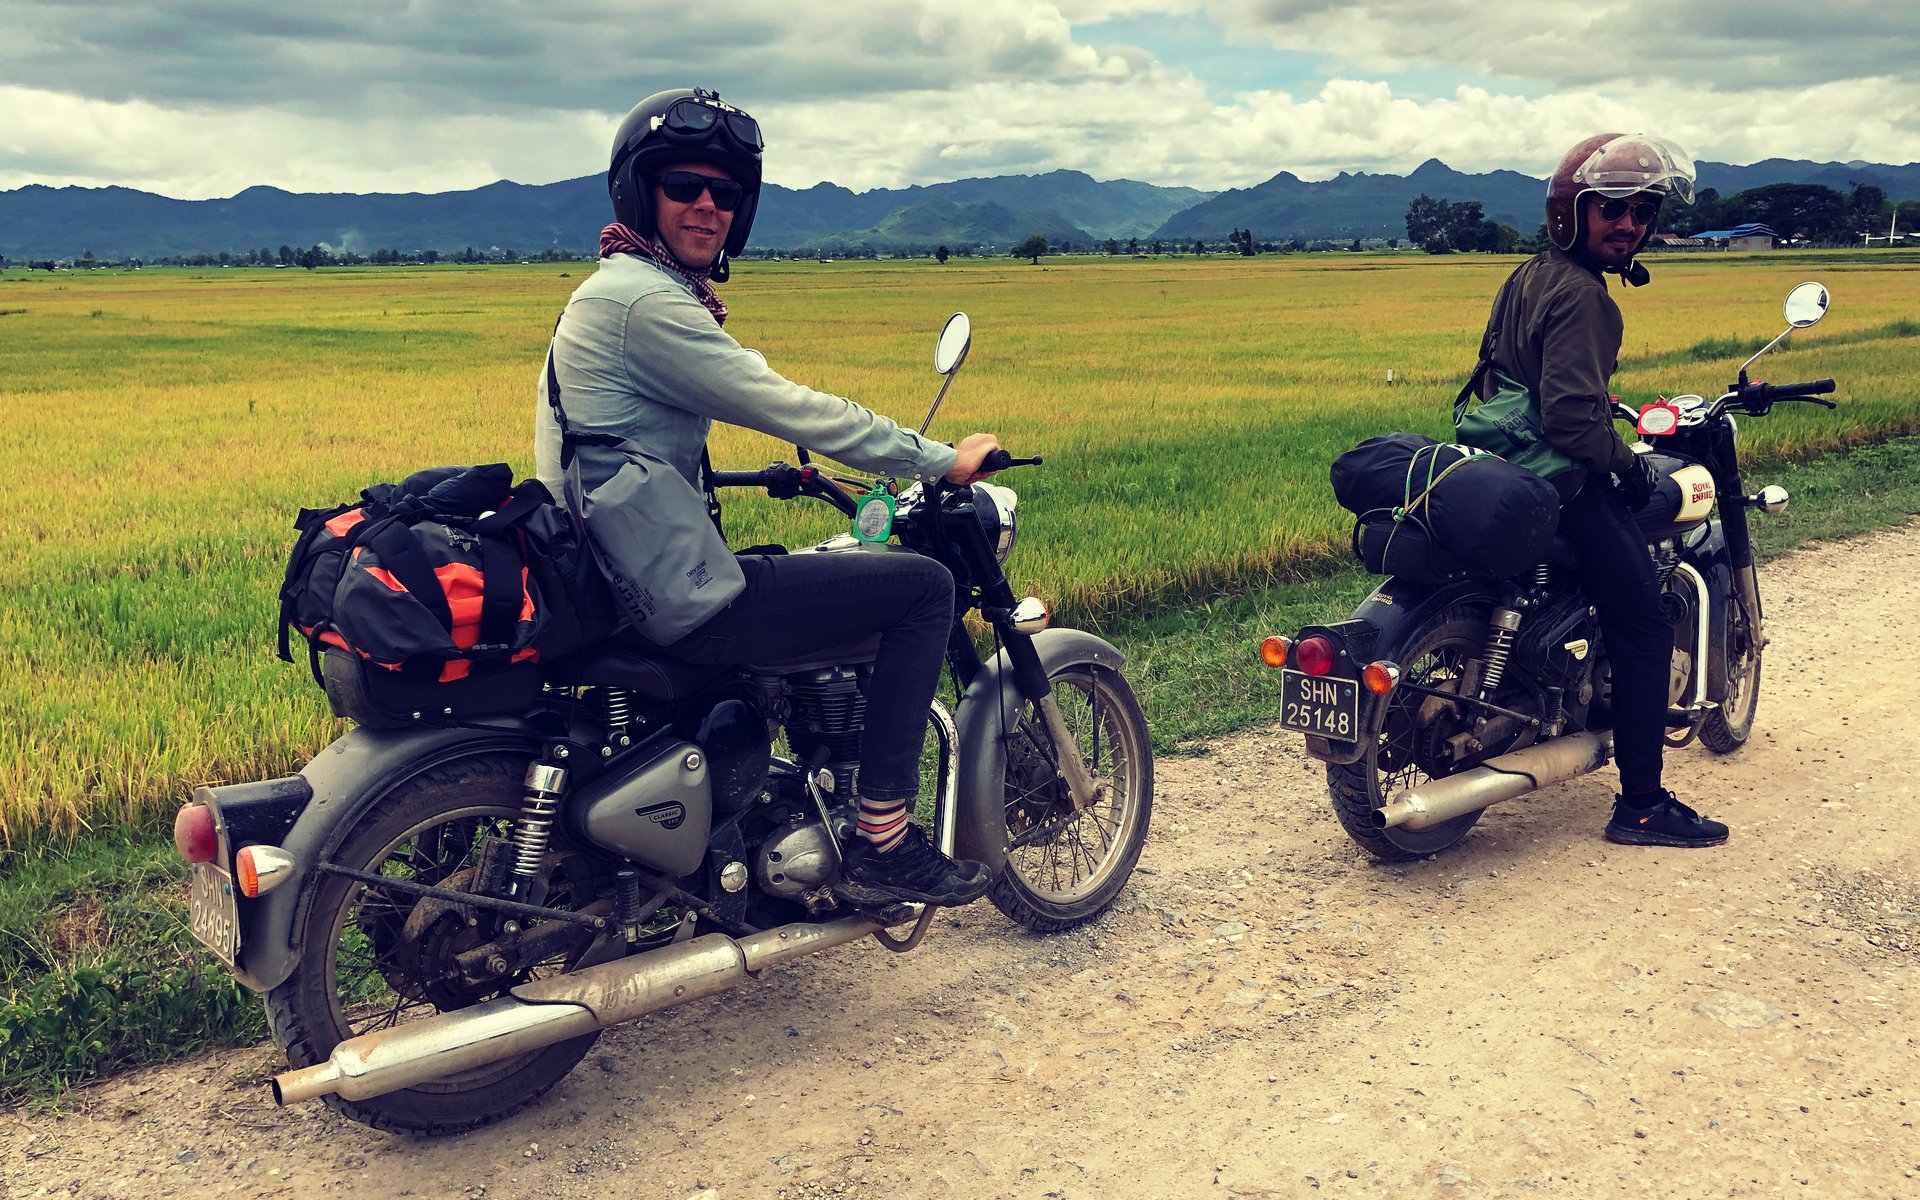 Myanmar-motorcycle-tour-burma-motorcycle-tour